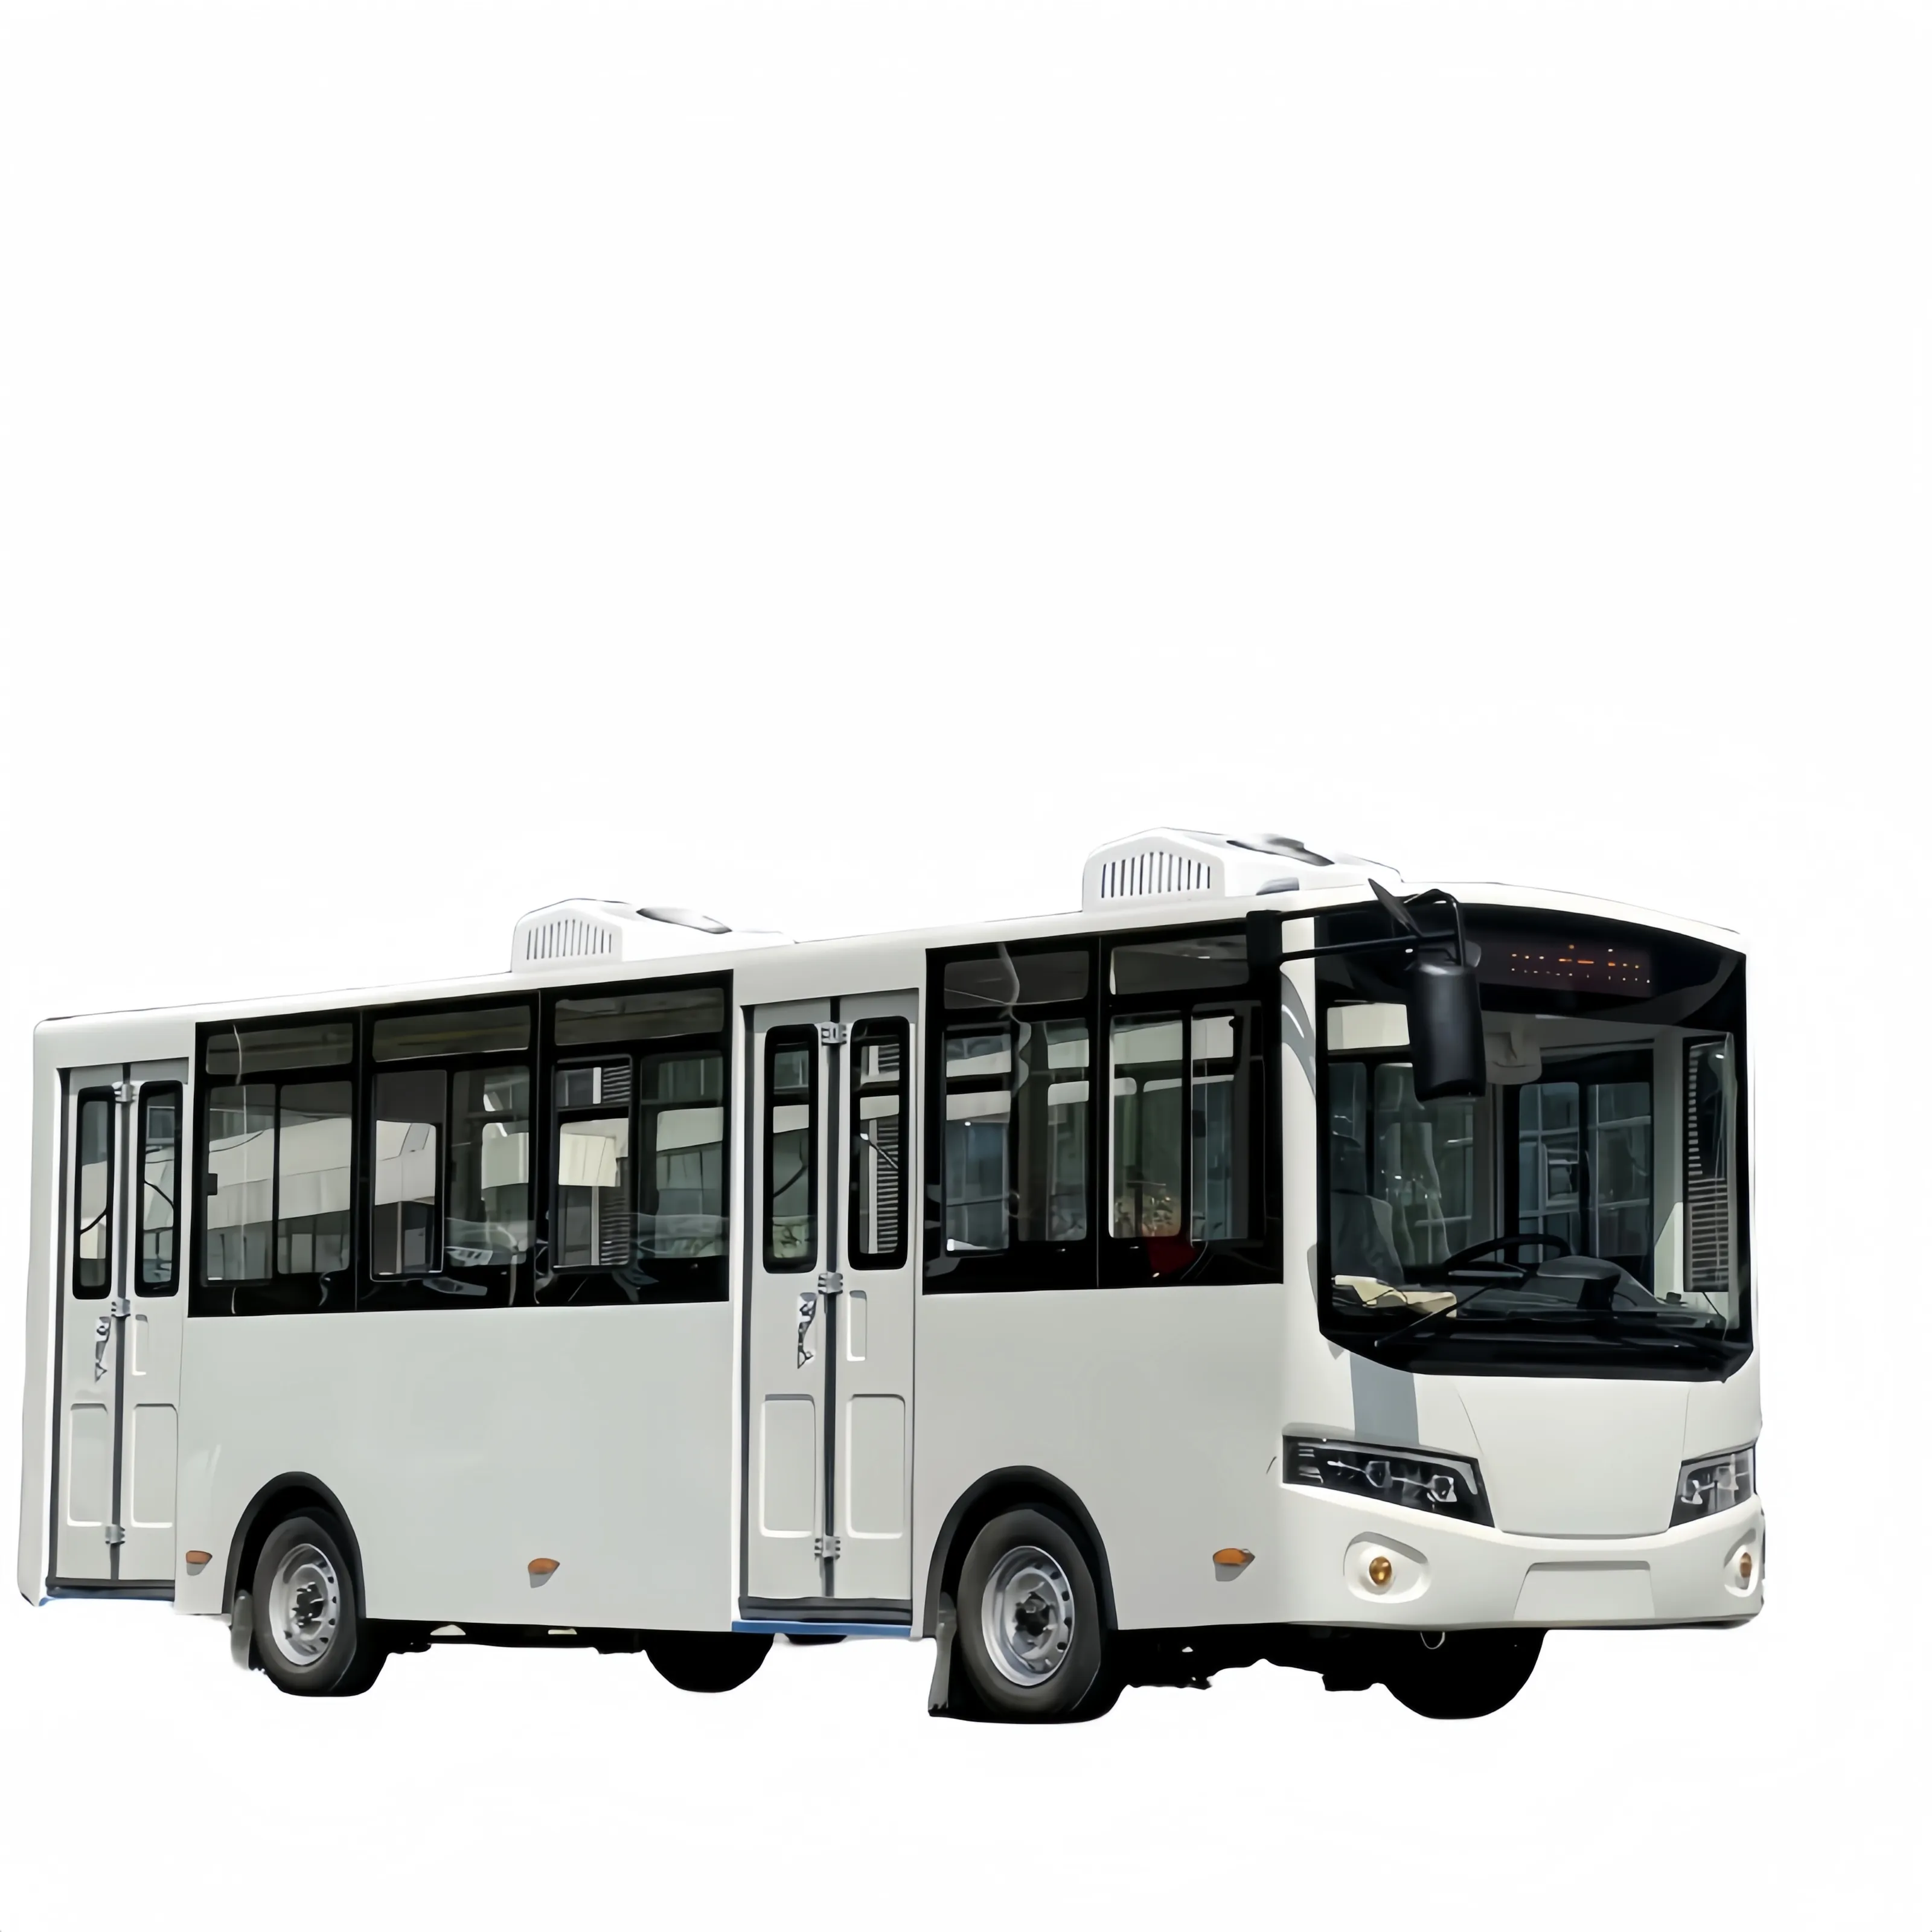 Ônibus elétrico de turismo com 23 assentos para turismo, carro, cidade, turismo, com certificação CE